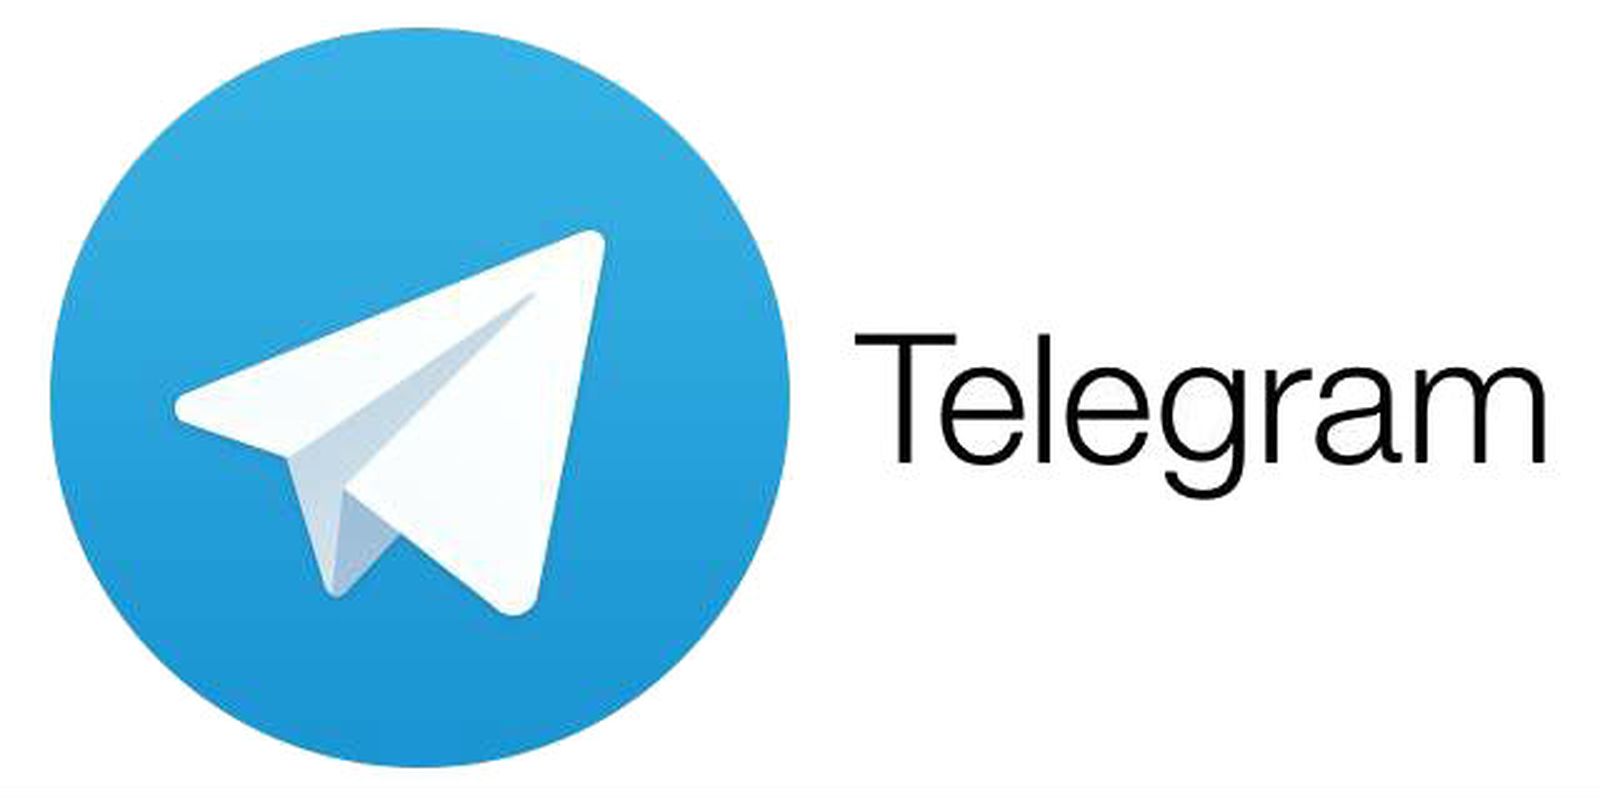 ટૂંક સમયમાં આવી રહ્યું છે Telegramનું નવું અપડેટ, એપમાં યુઝર્સને મળશે ઘણા શાનદાર ફીચર્સ